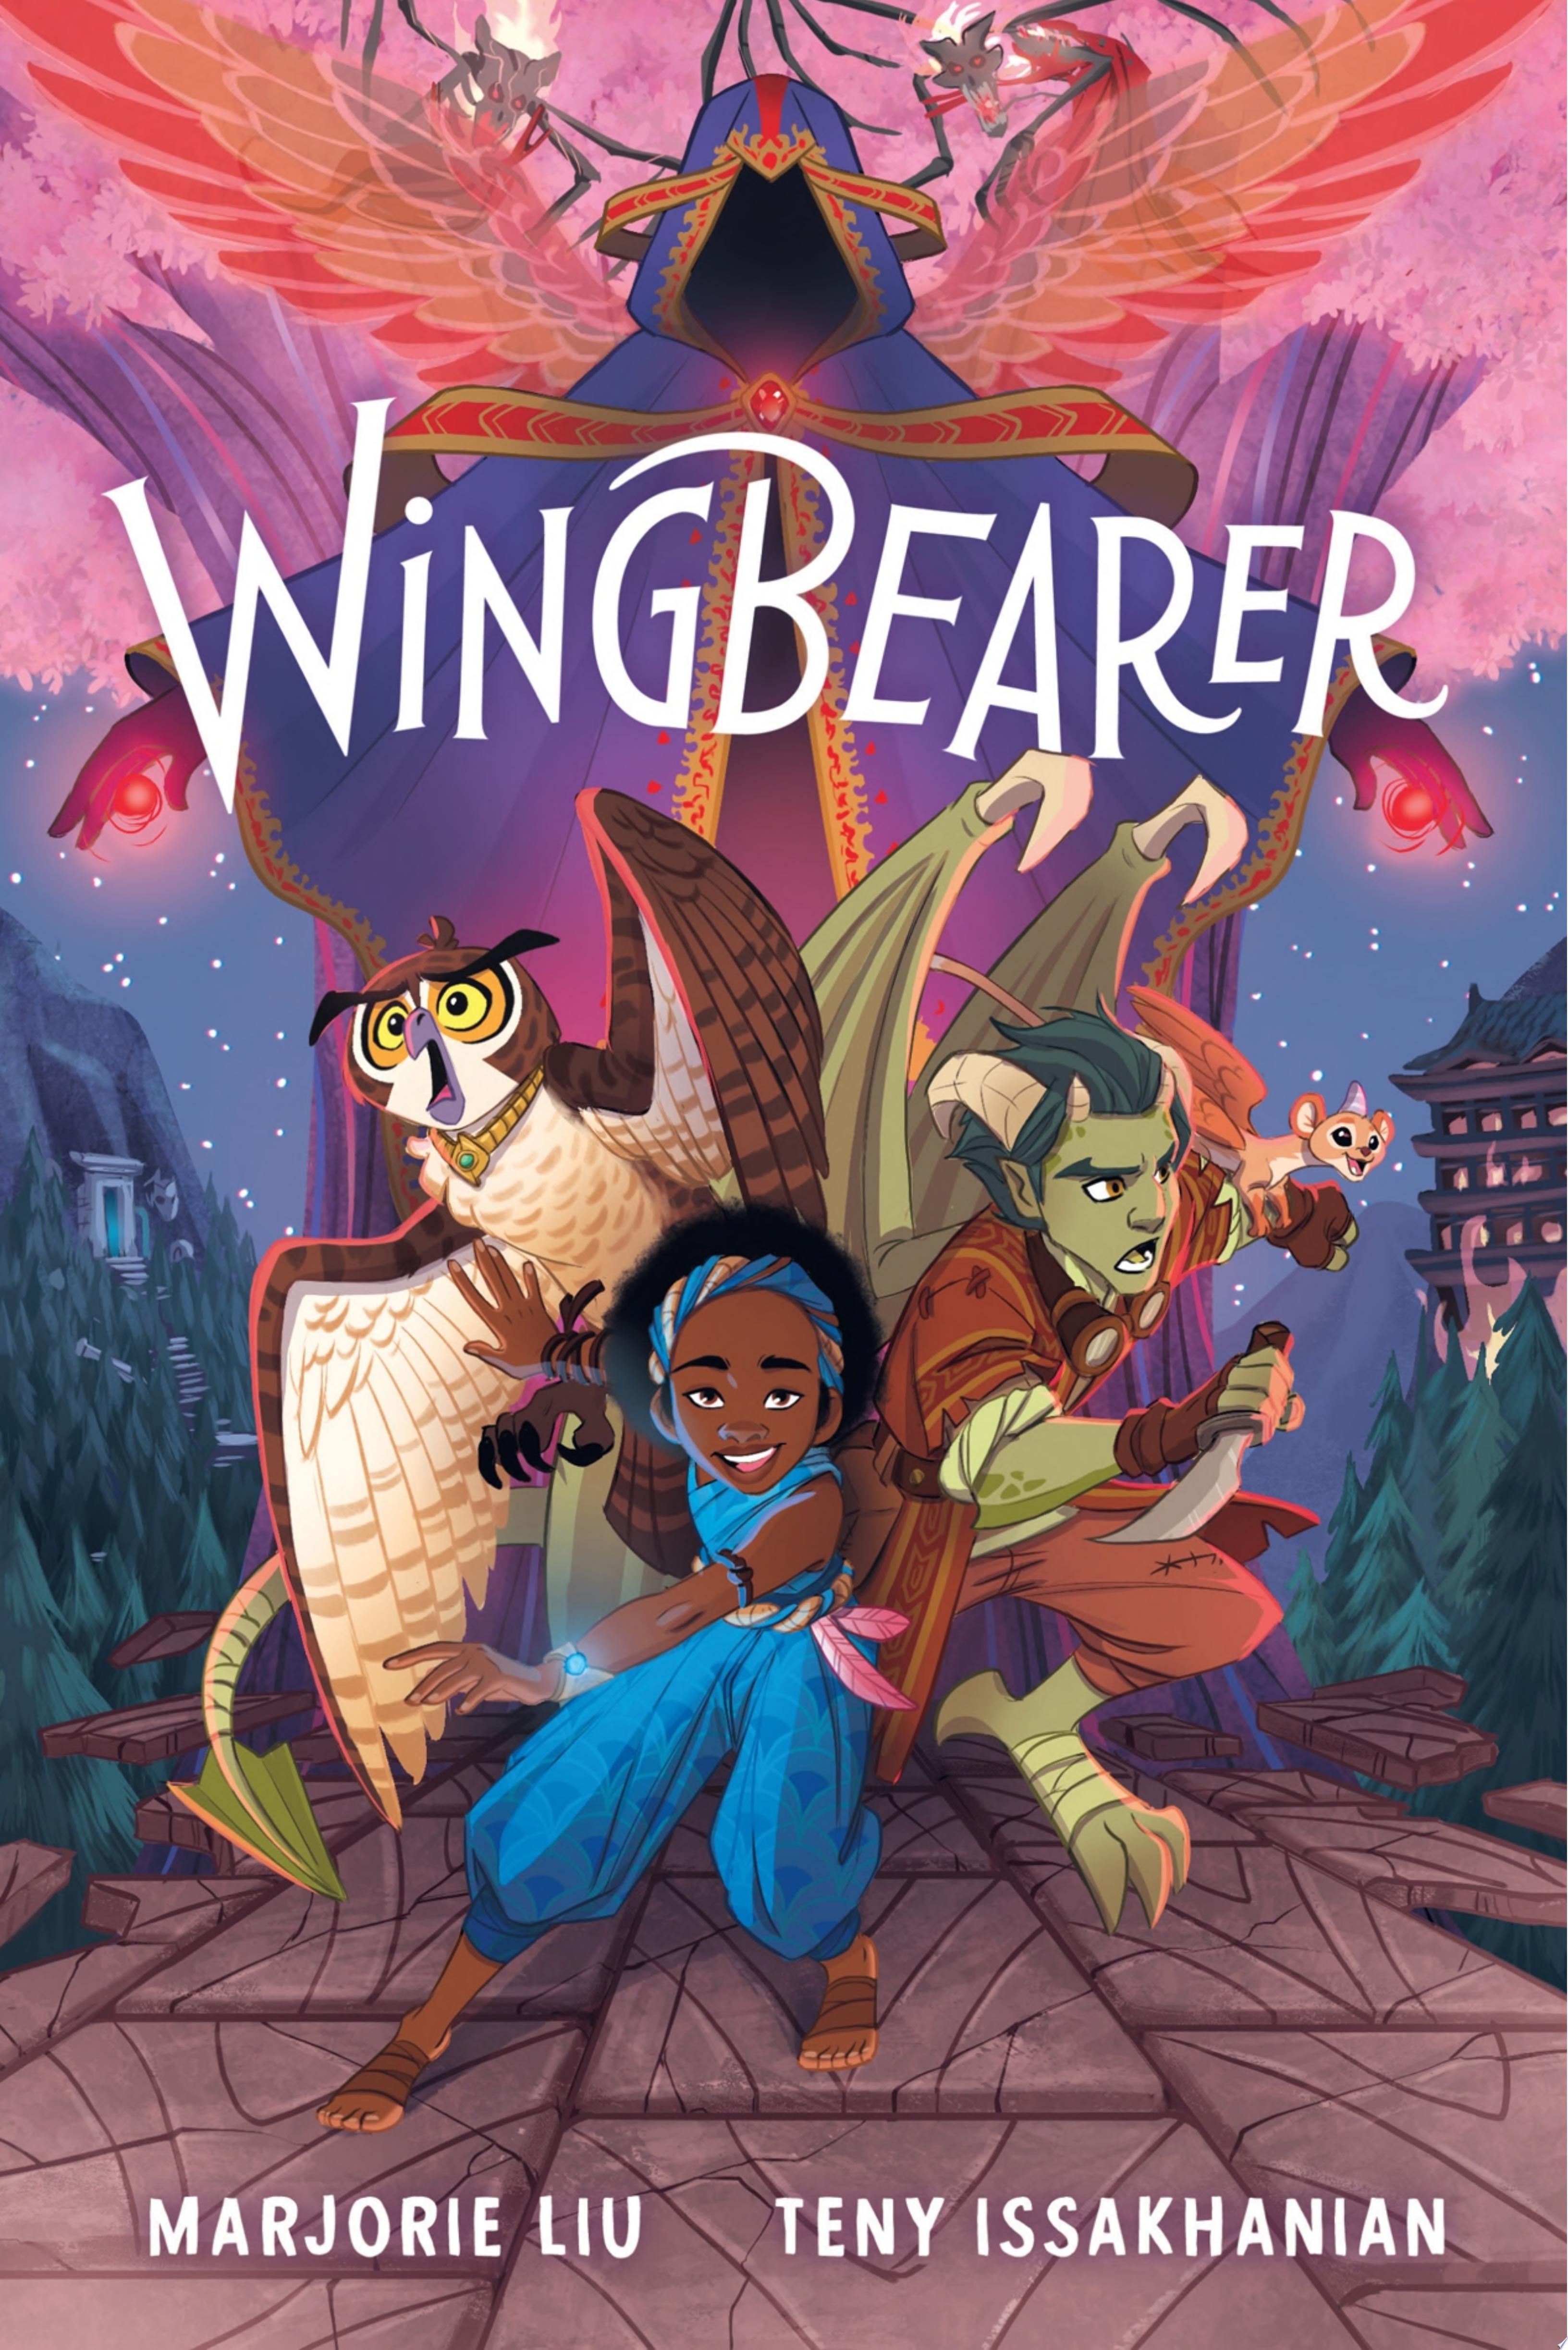 Image for "Wingbearer"